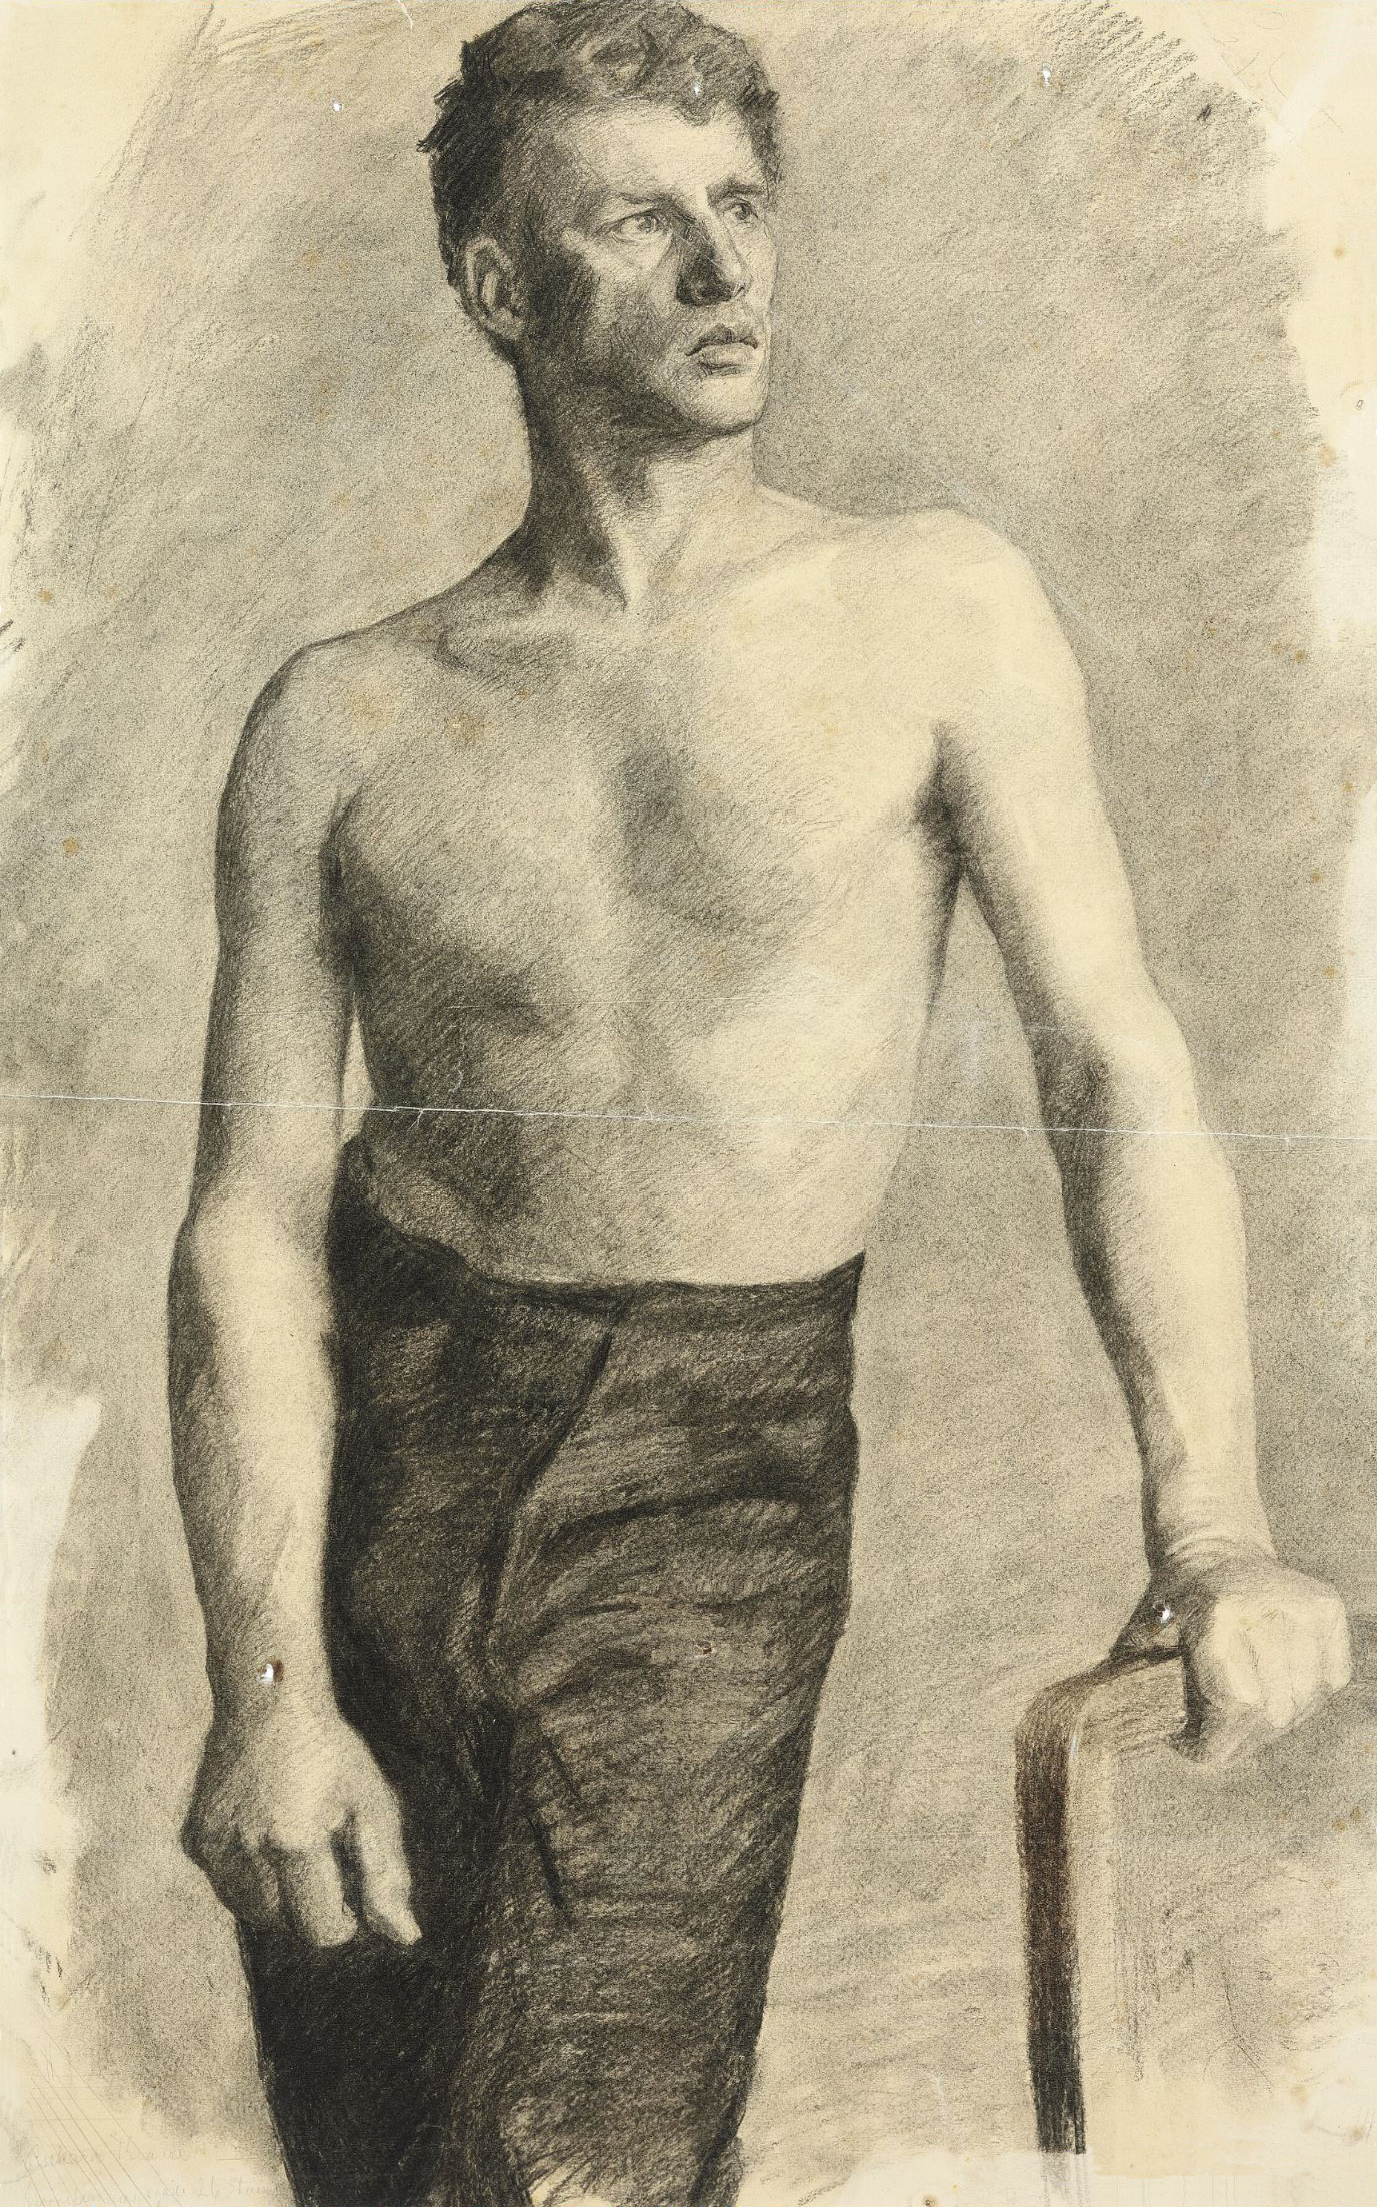 Shirtless Man Drawing at GetDrawings Free download